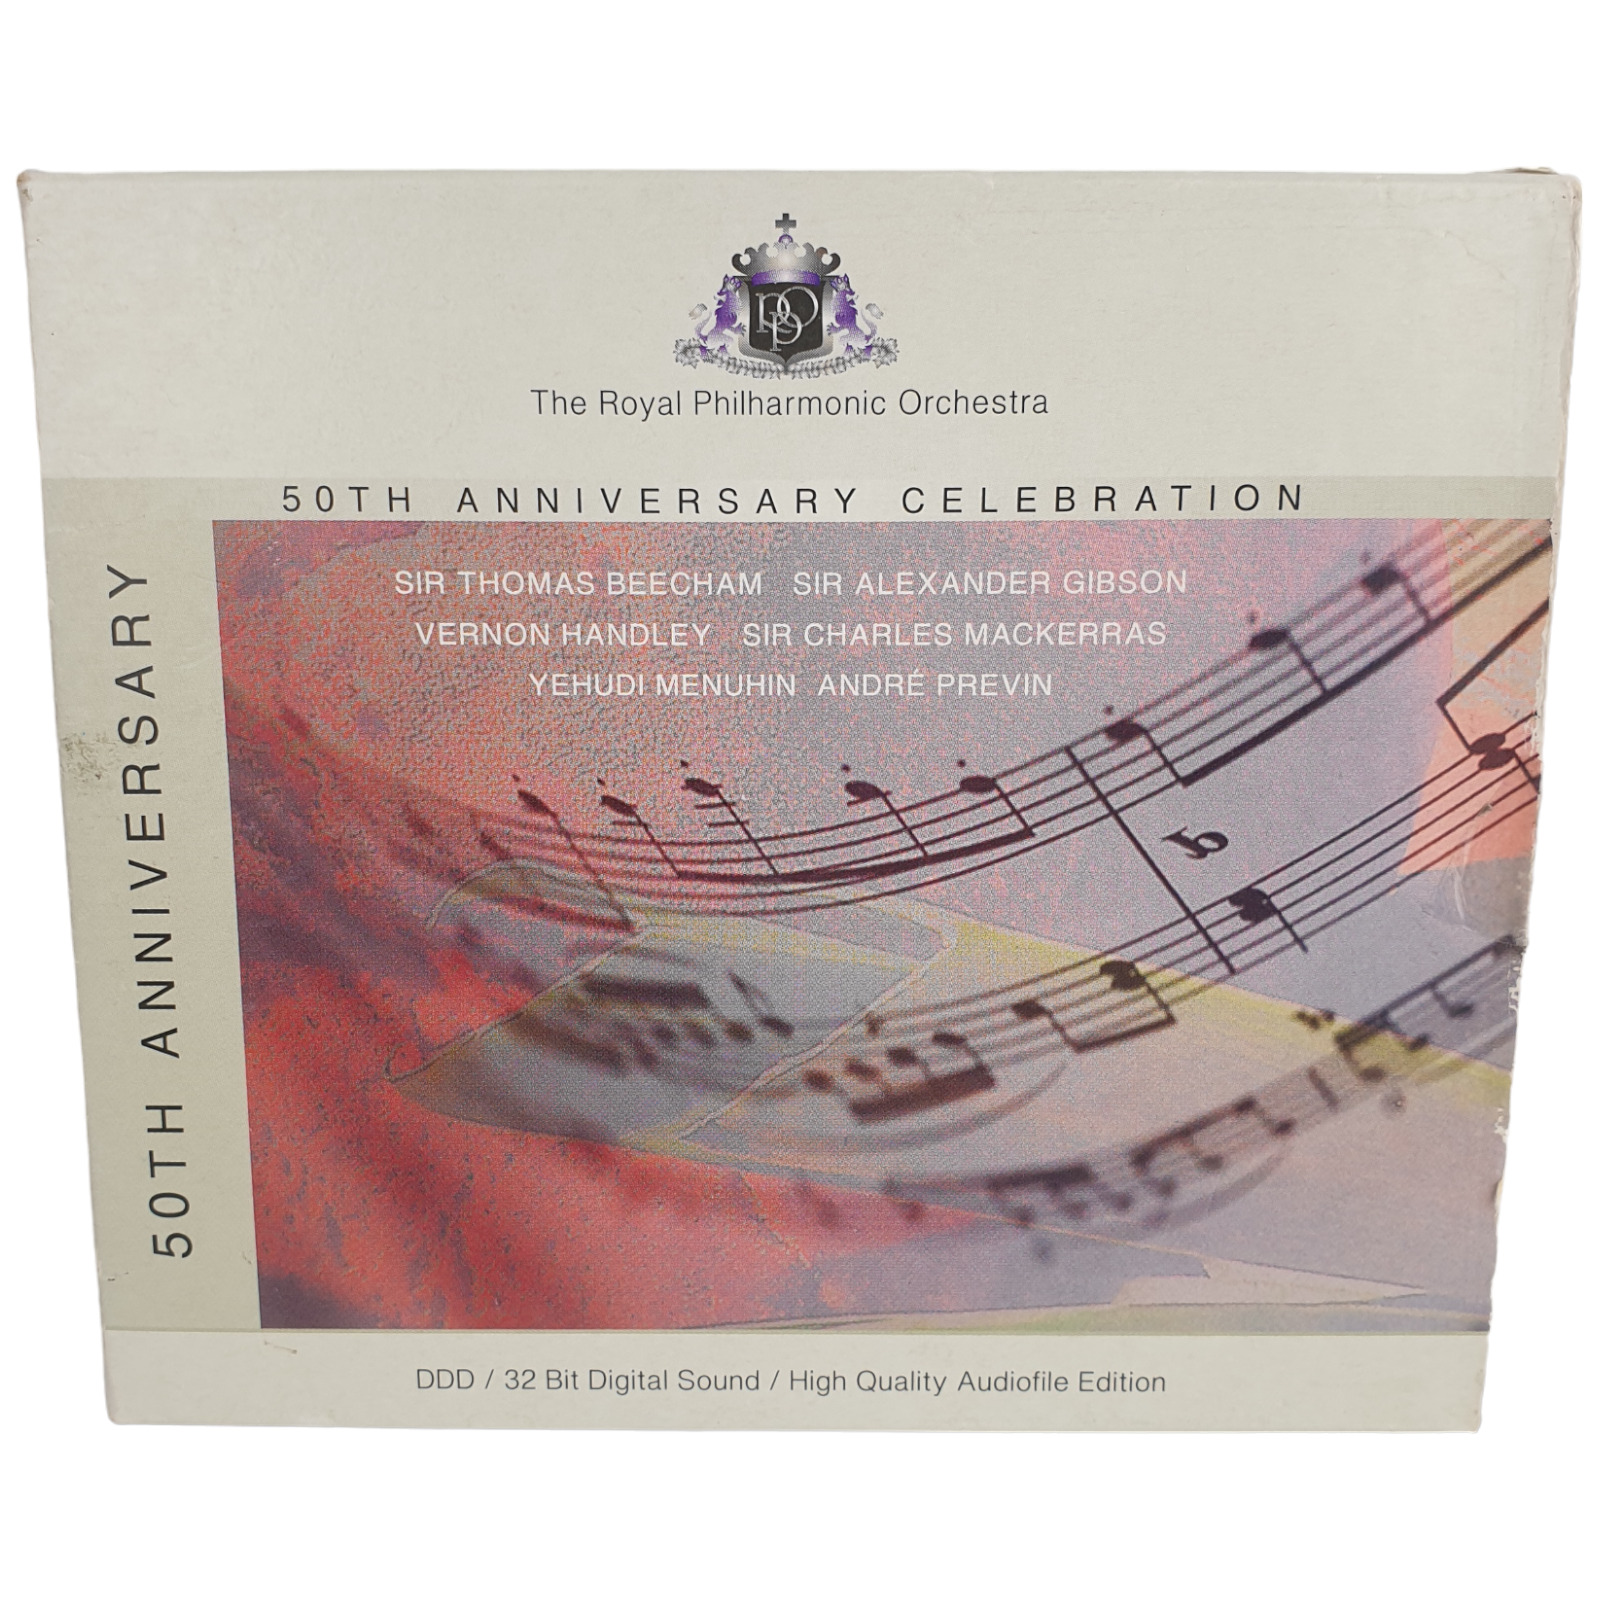 Vtg Royal Philharmonic Orchestra 50th Anniv Celebration CD Slipcase Germany 1993